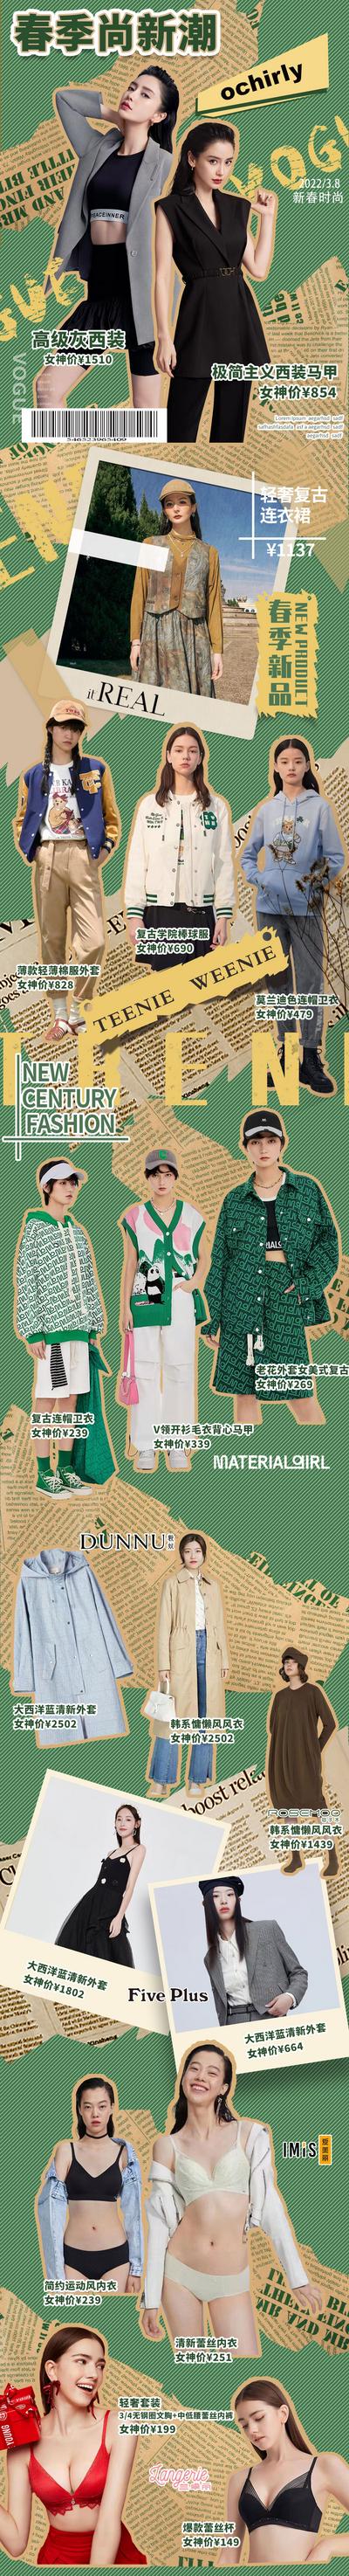 南门网 专题设计 长图 服饰 穿搭 潮流 时尚 复古 拼贴 绿色